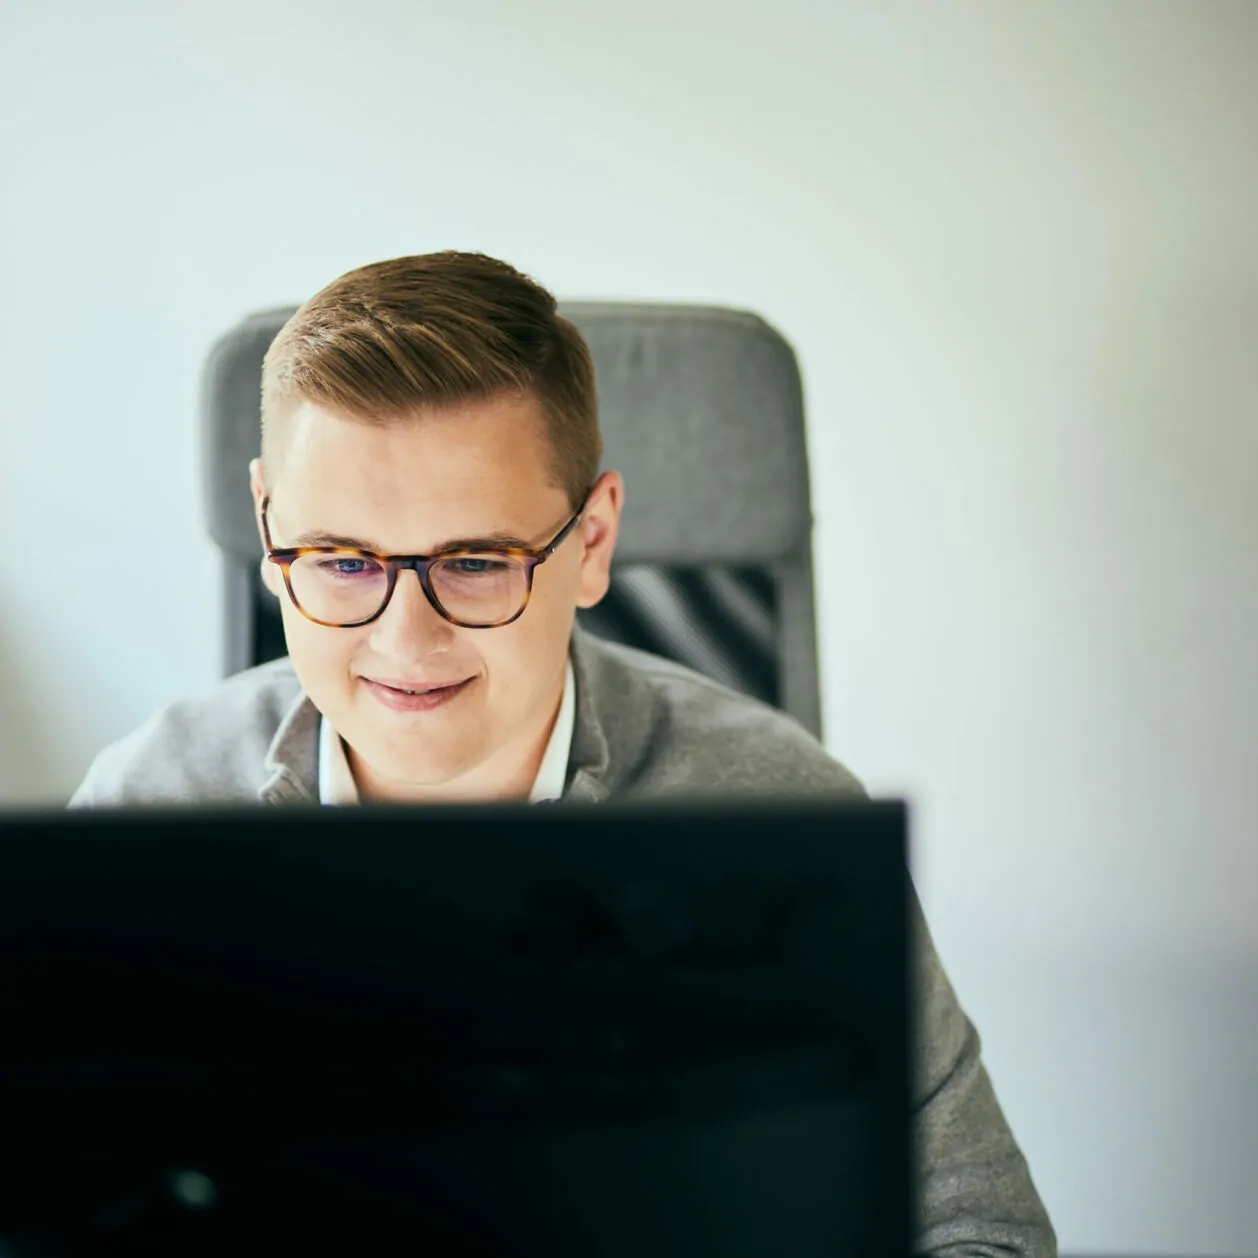 Foto von einem Mann mit Brille, der in einen Computerbildschirm schaut.